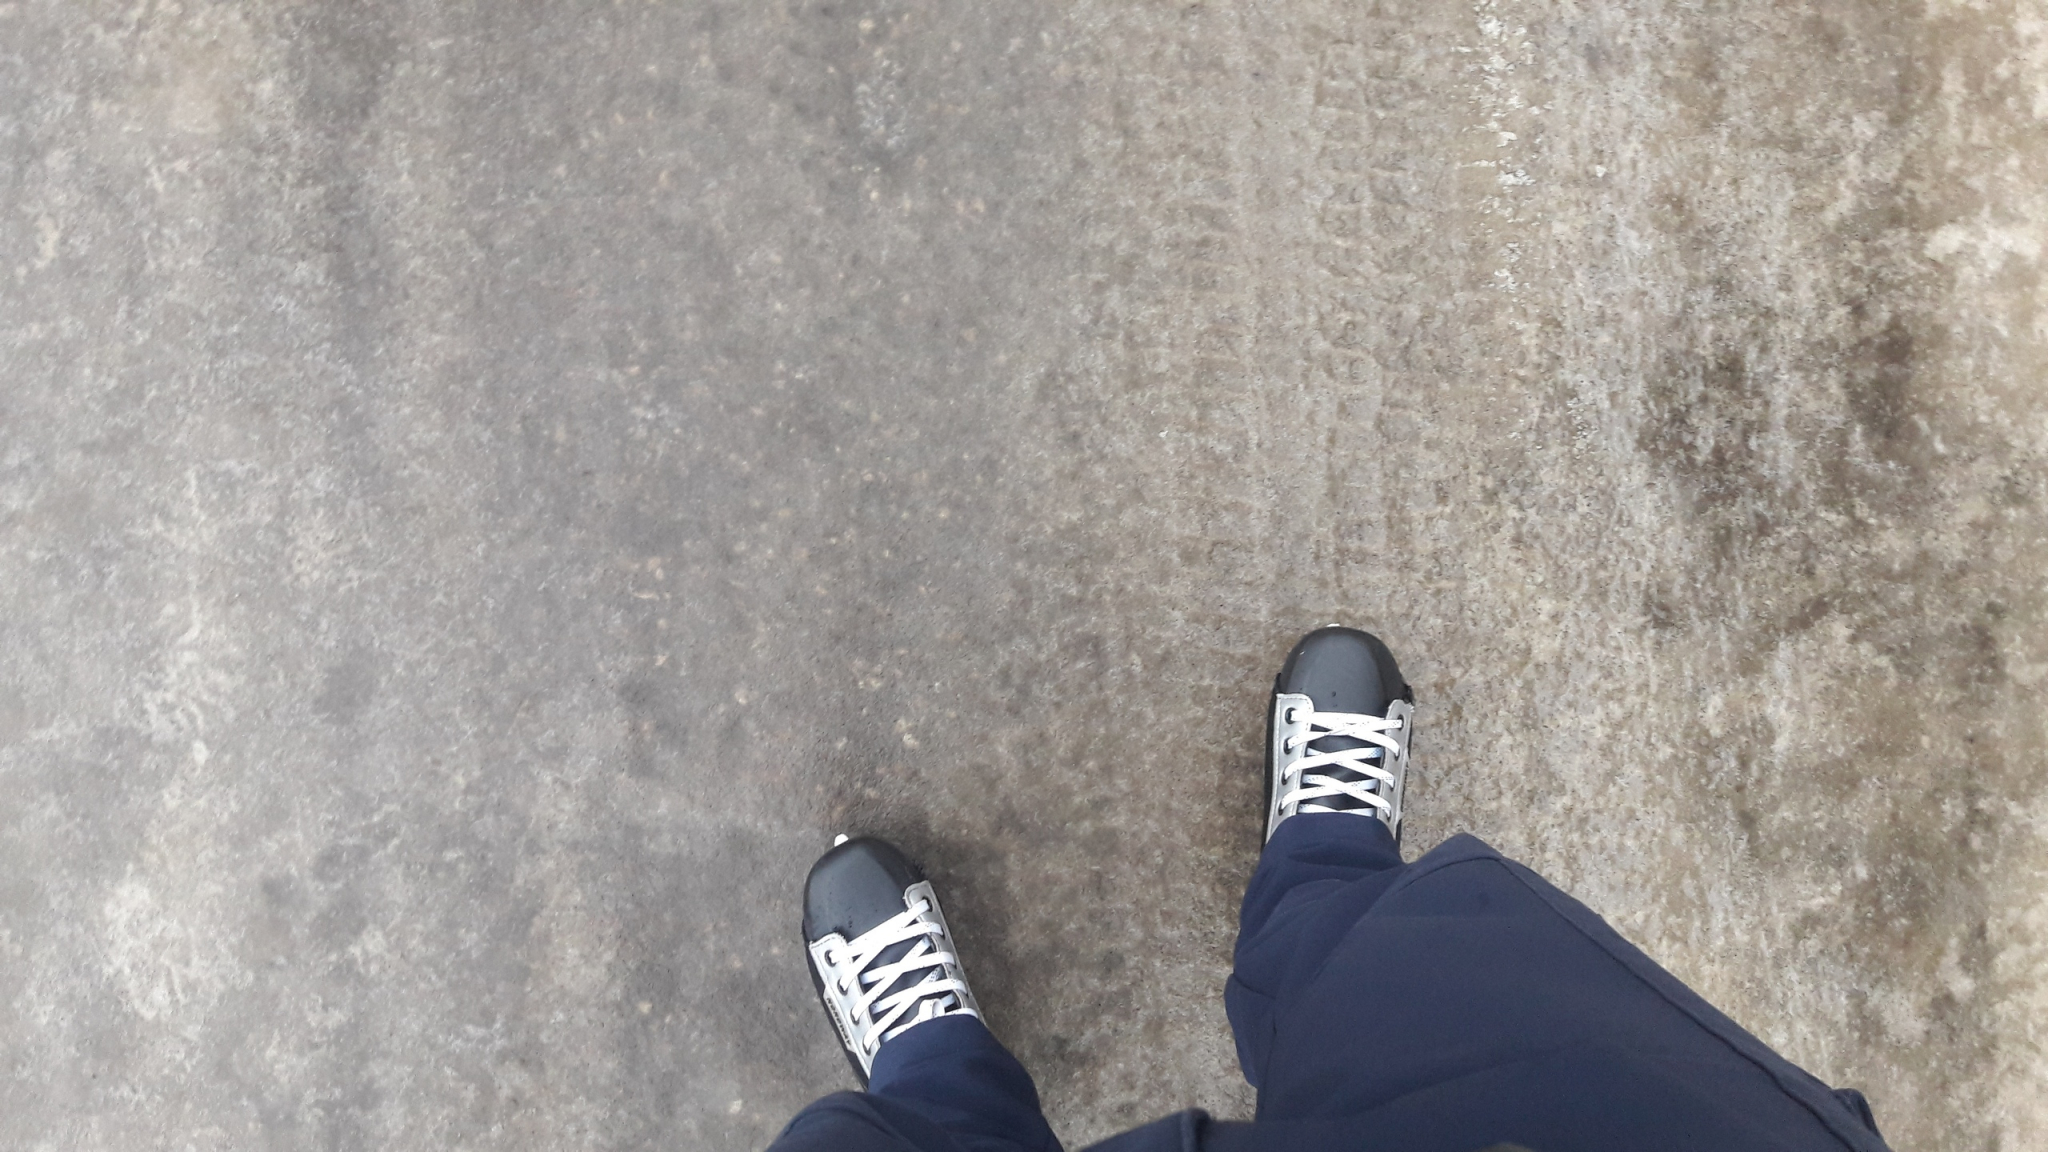 По тротуару катаются на коньках: 10 фото и видео о последствиях ледяного дождя